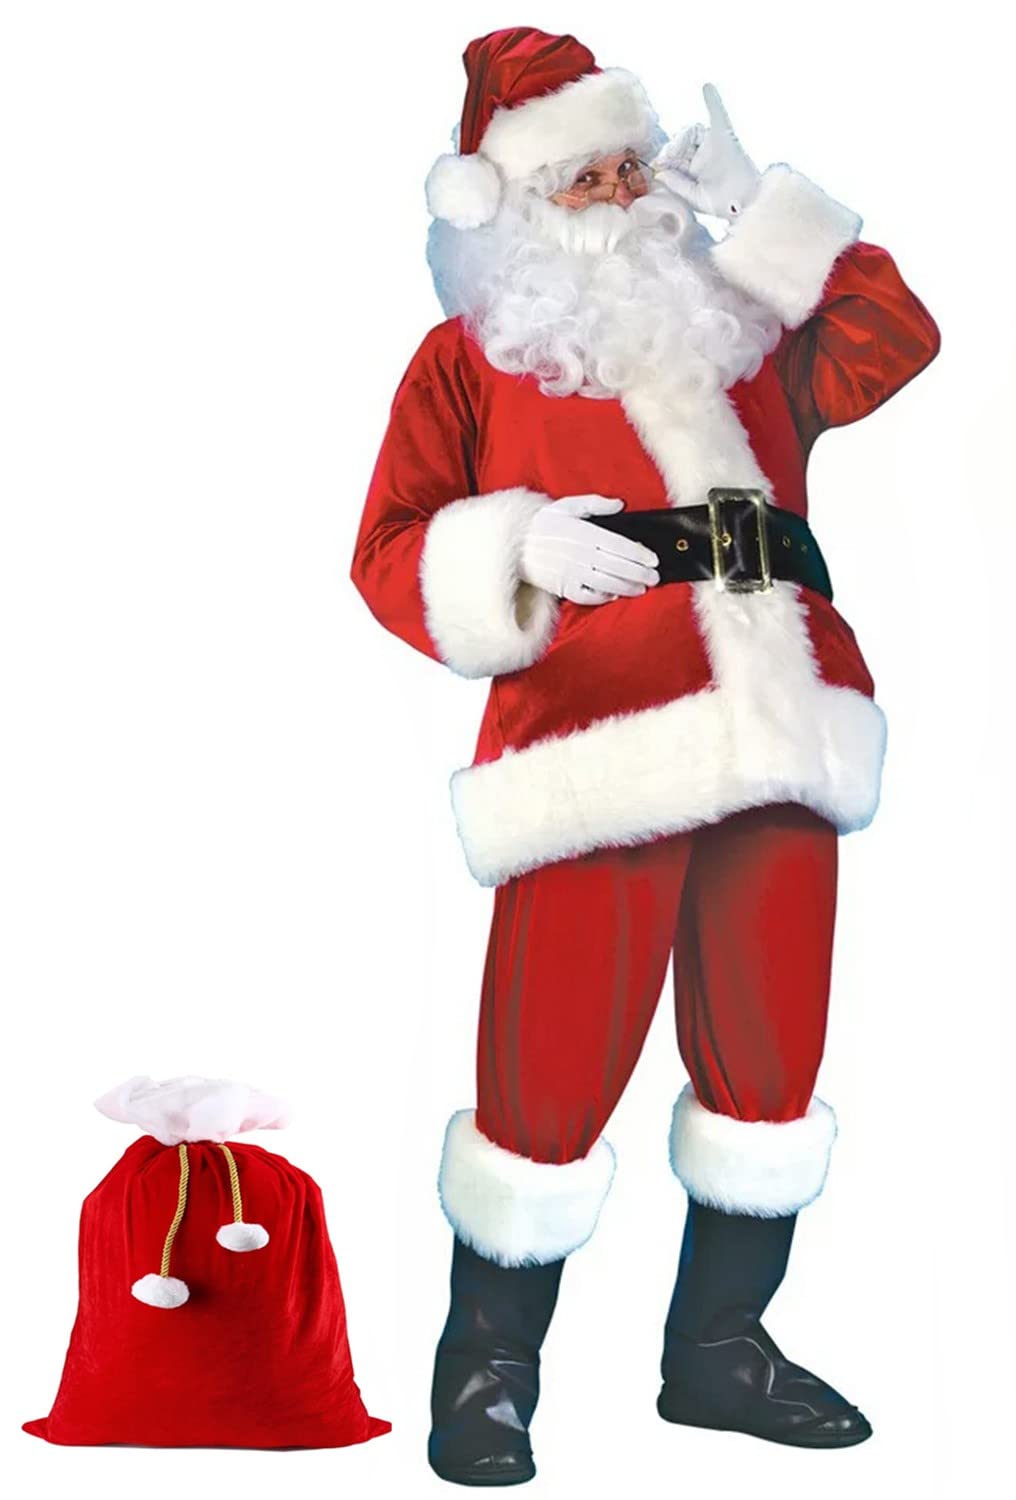 ZLYJ Weihnachtsmann-Kostüm Für Männer Weihnachtsmann-Anzug Erwachsene Männer, Erwachsenes Weihnachtsmann-Outfit Mit Handschuhen Red,XXXL